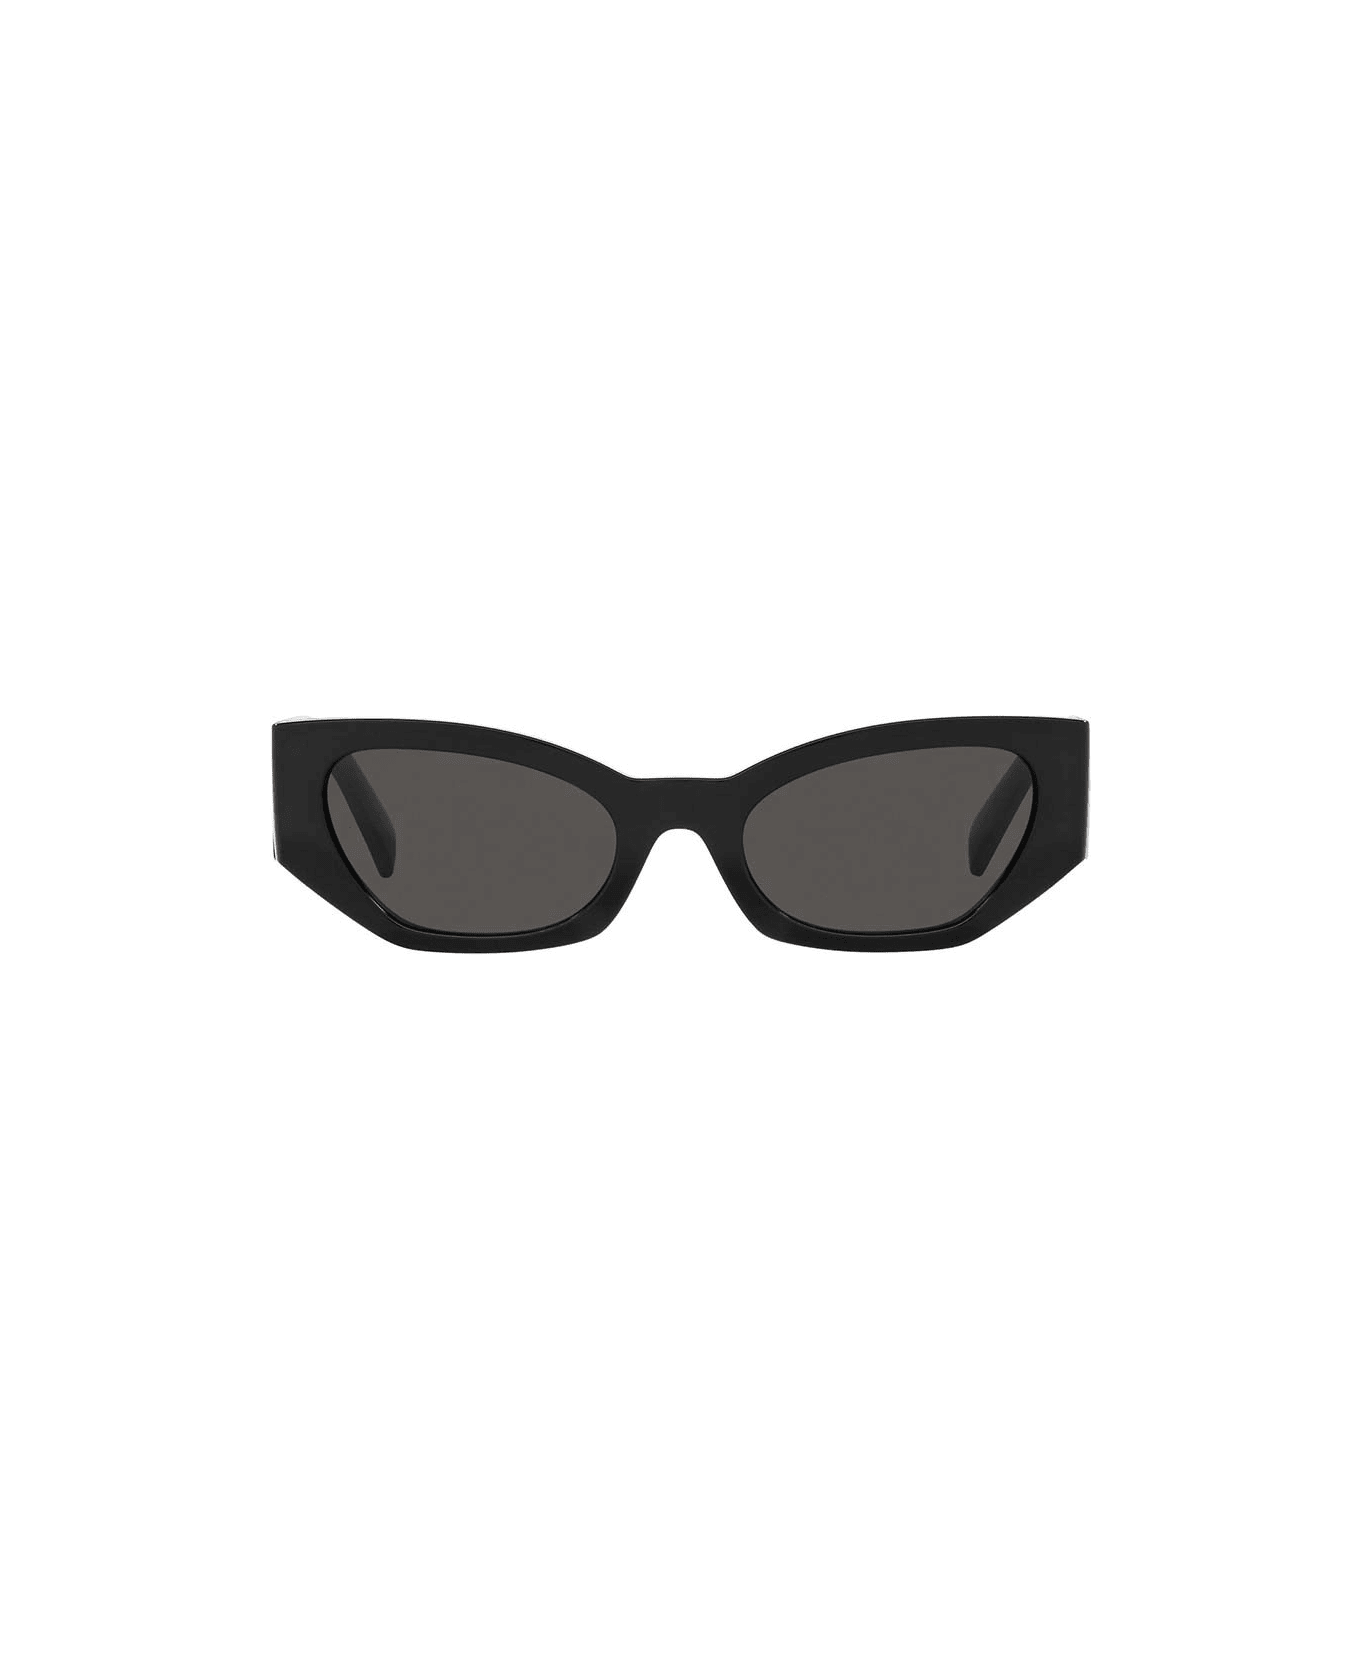 Maske U8 Sunglasses Eyewear Eyewear - Nero/Nero